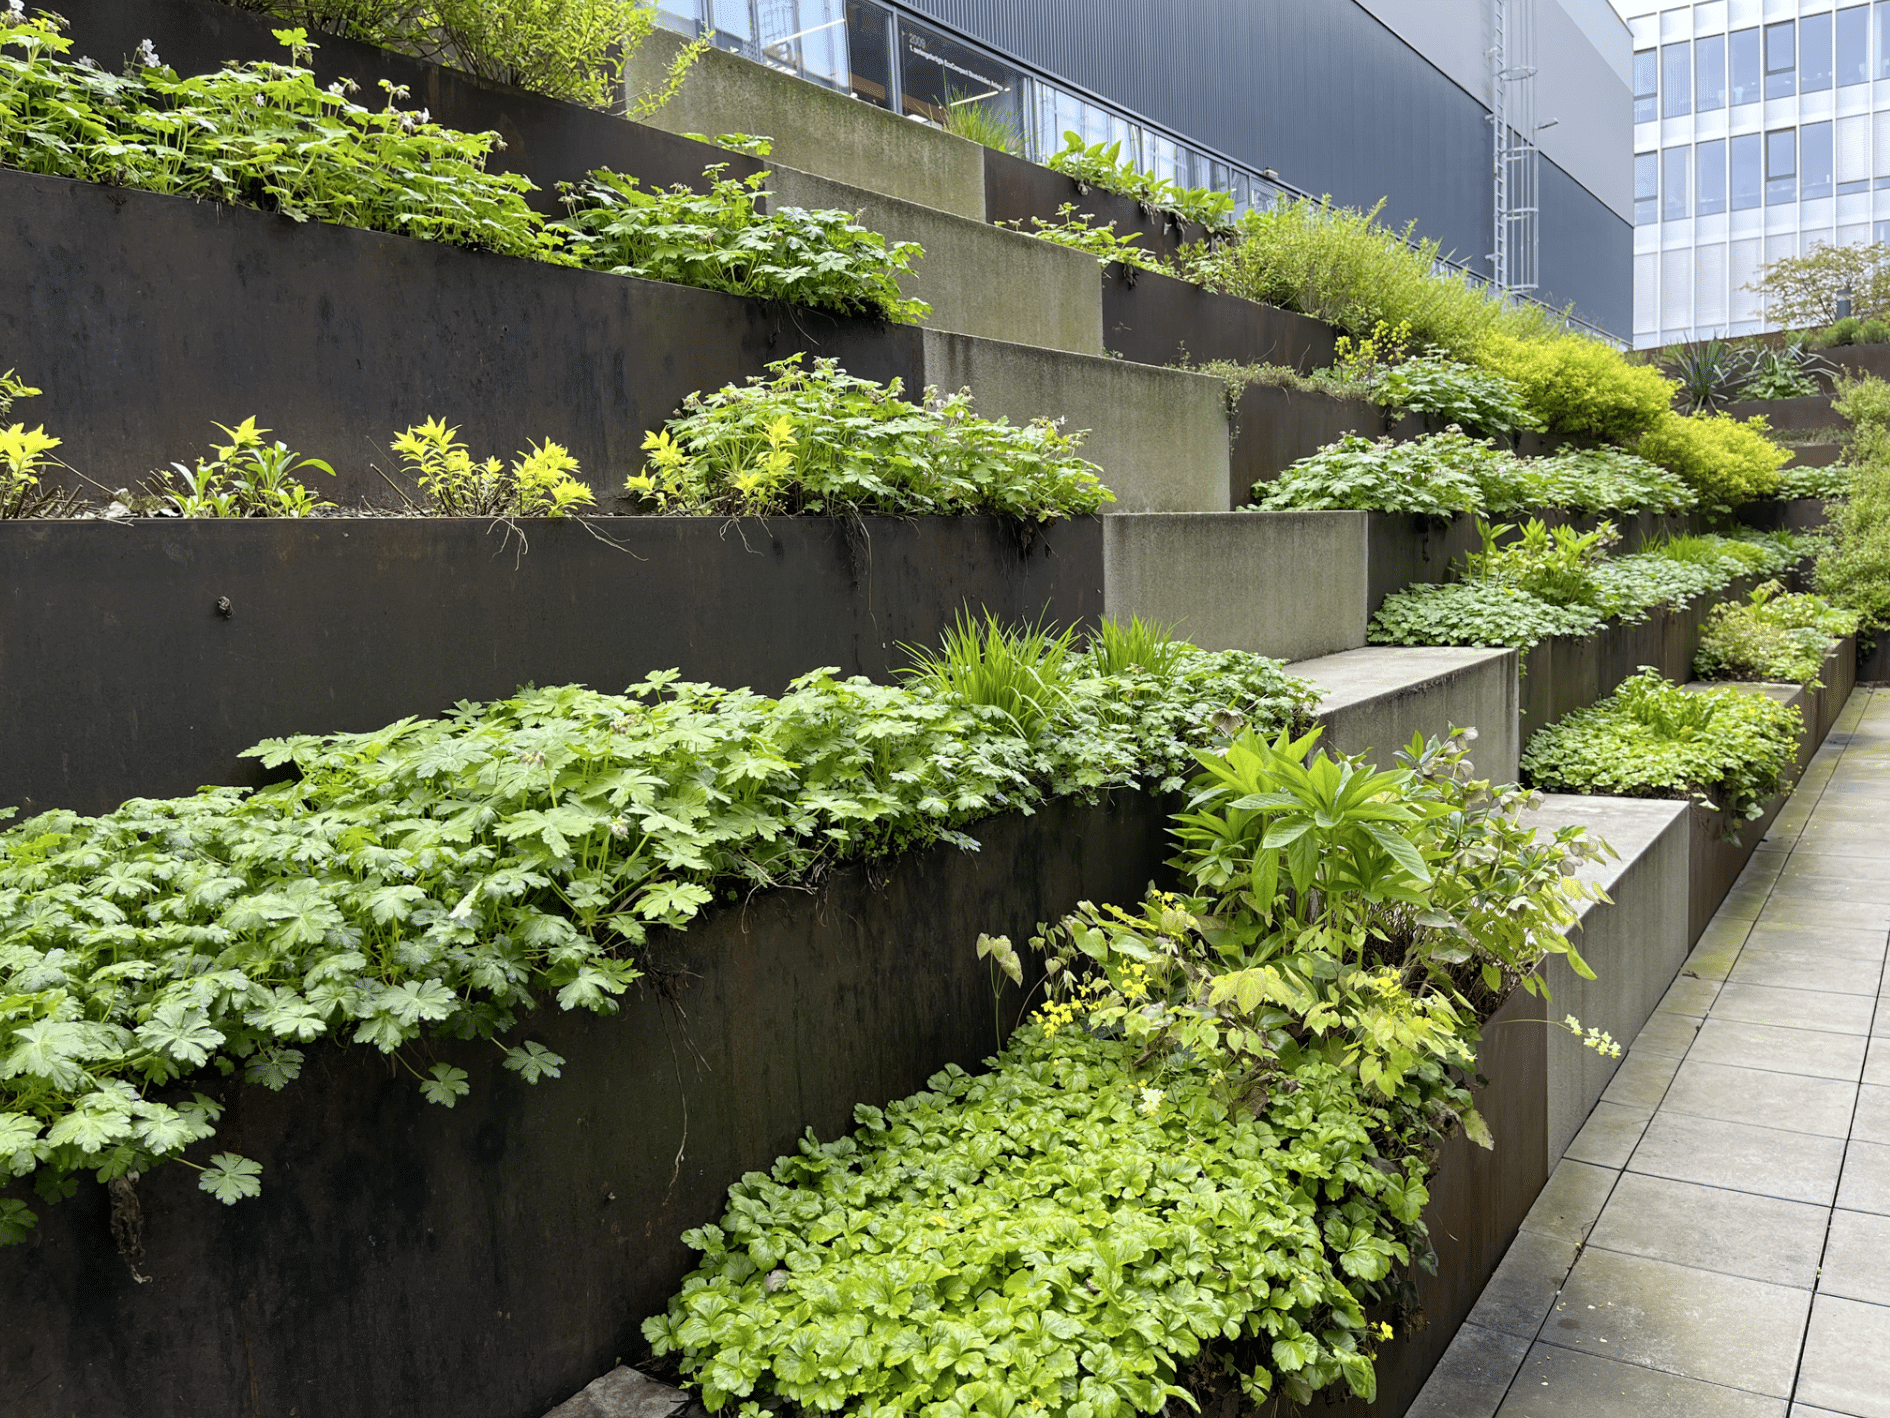 Gartenbau Schmid präsentiert die bepflanzten Treppen im Innenhof eines Firmengebäudes.